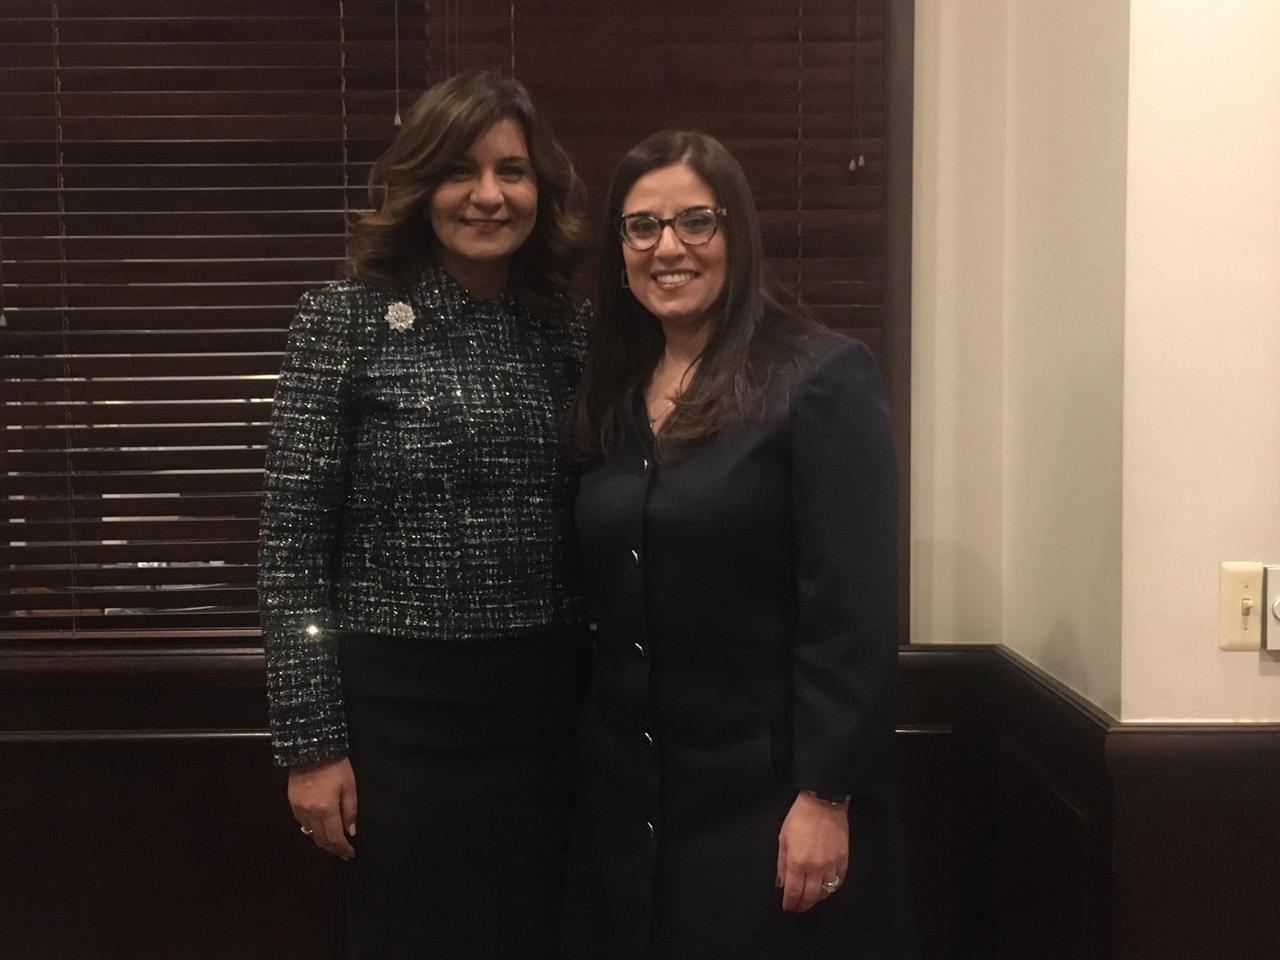   وزيرة الهجرة تصل «ميتشجان»..وتلتقي أول قاضية مصرية أمريكية في تاريخ الولايات المتحدة الأمريكية